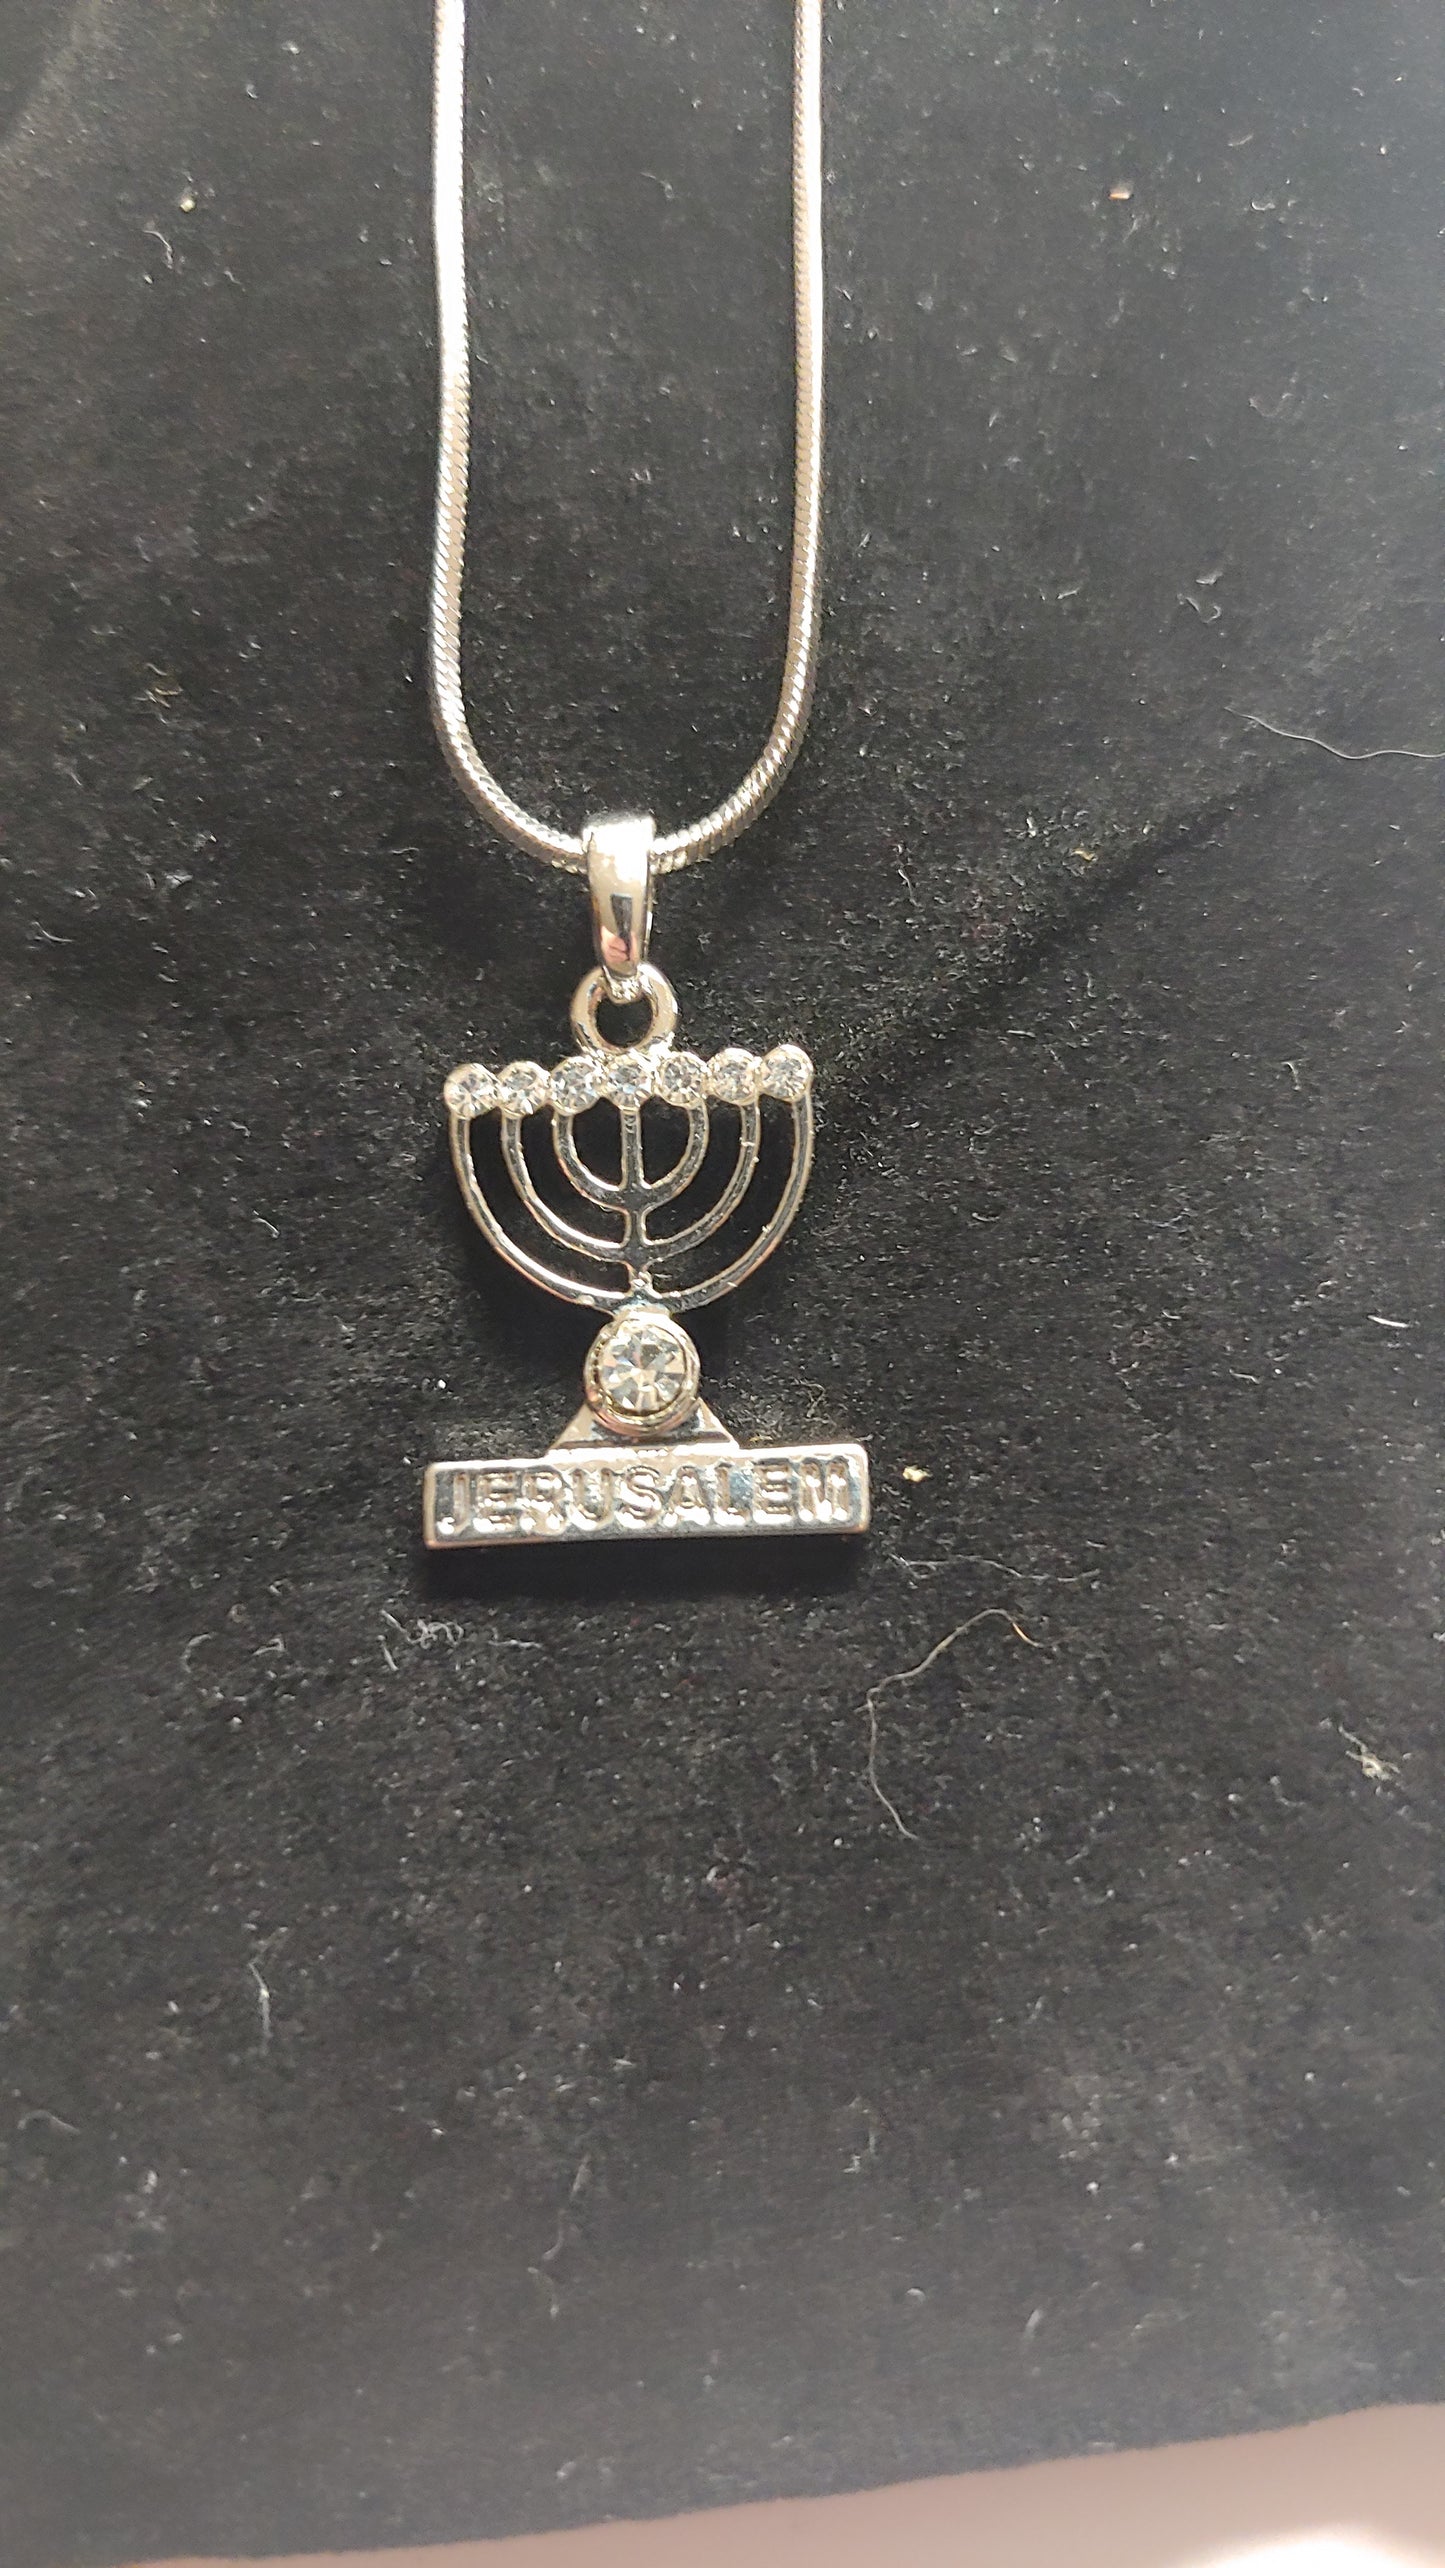 Menorah Necklace - says Jerusalem